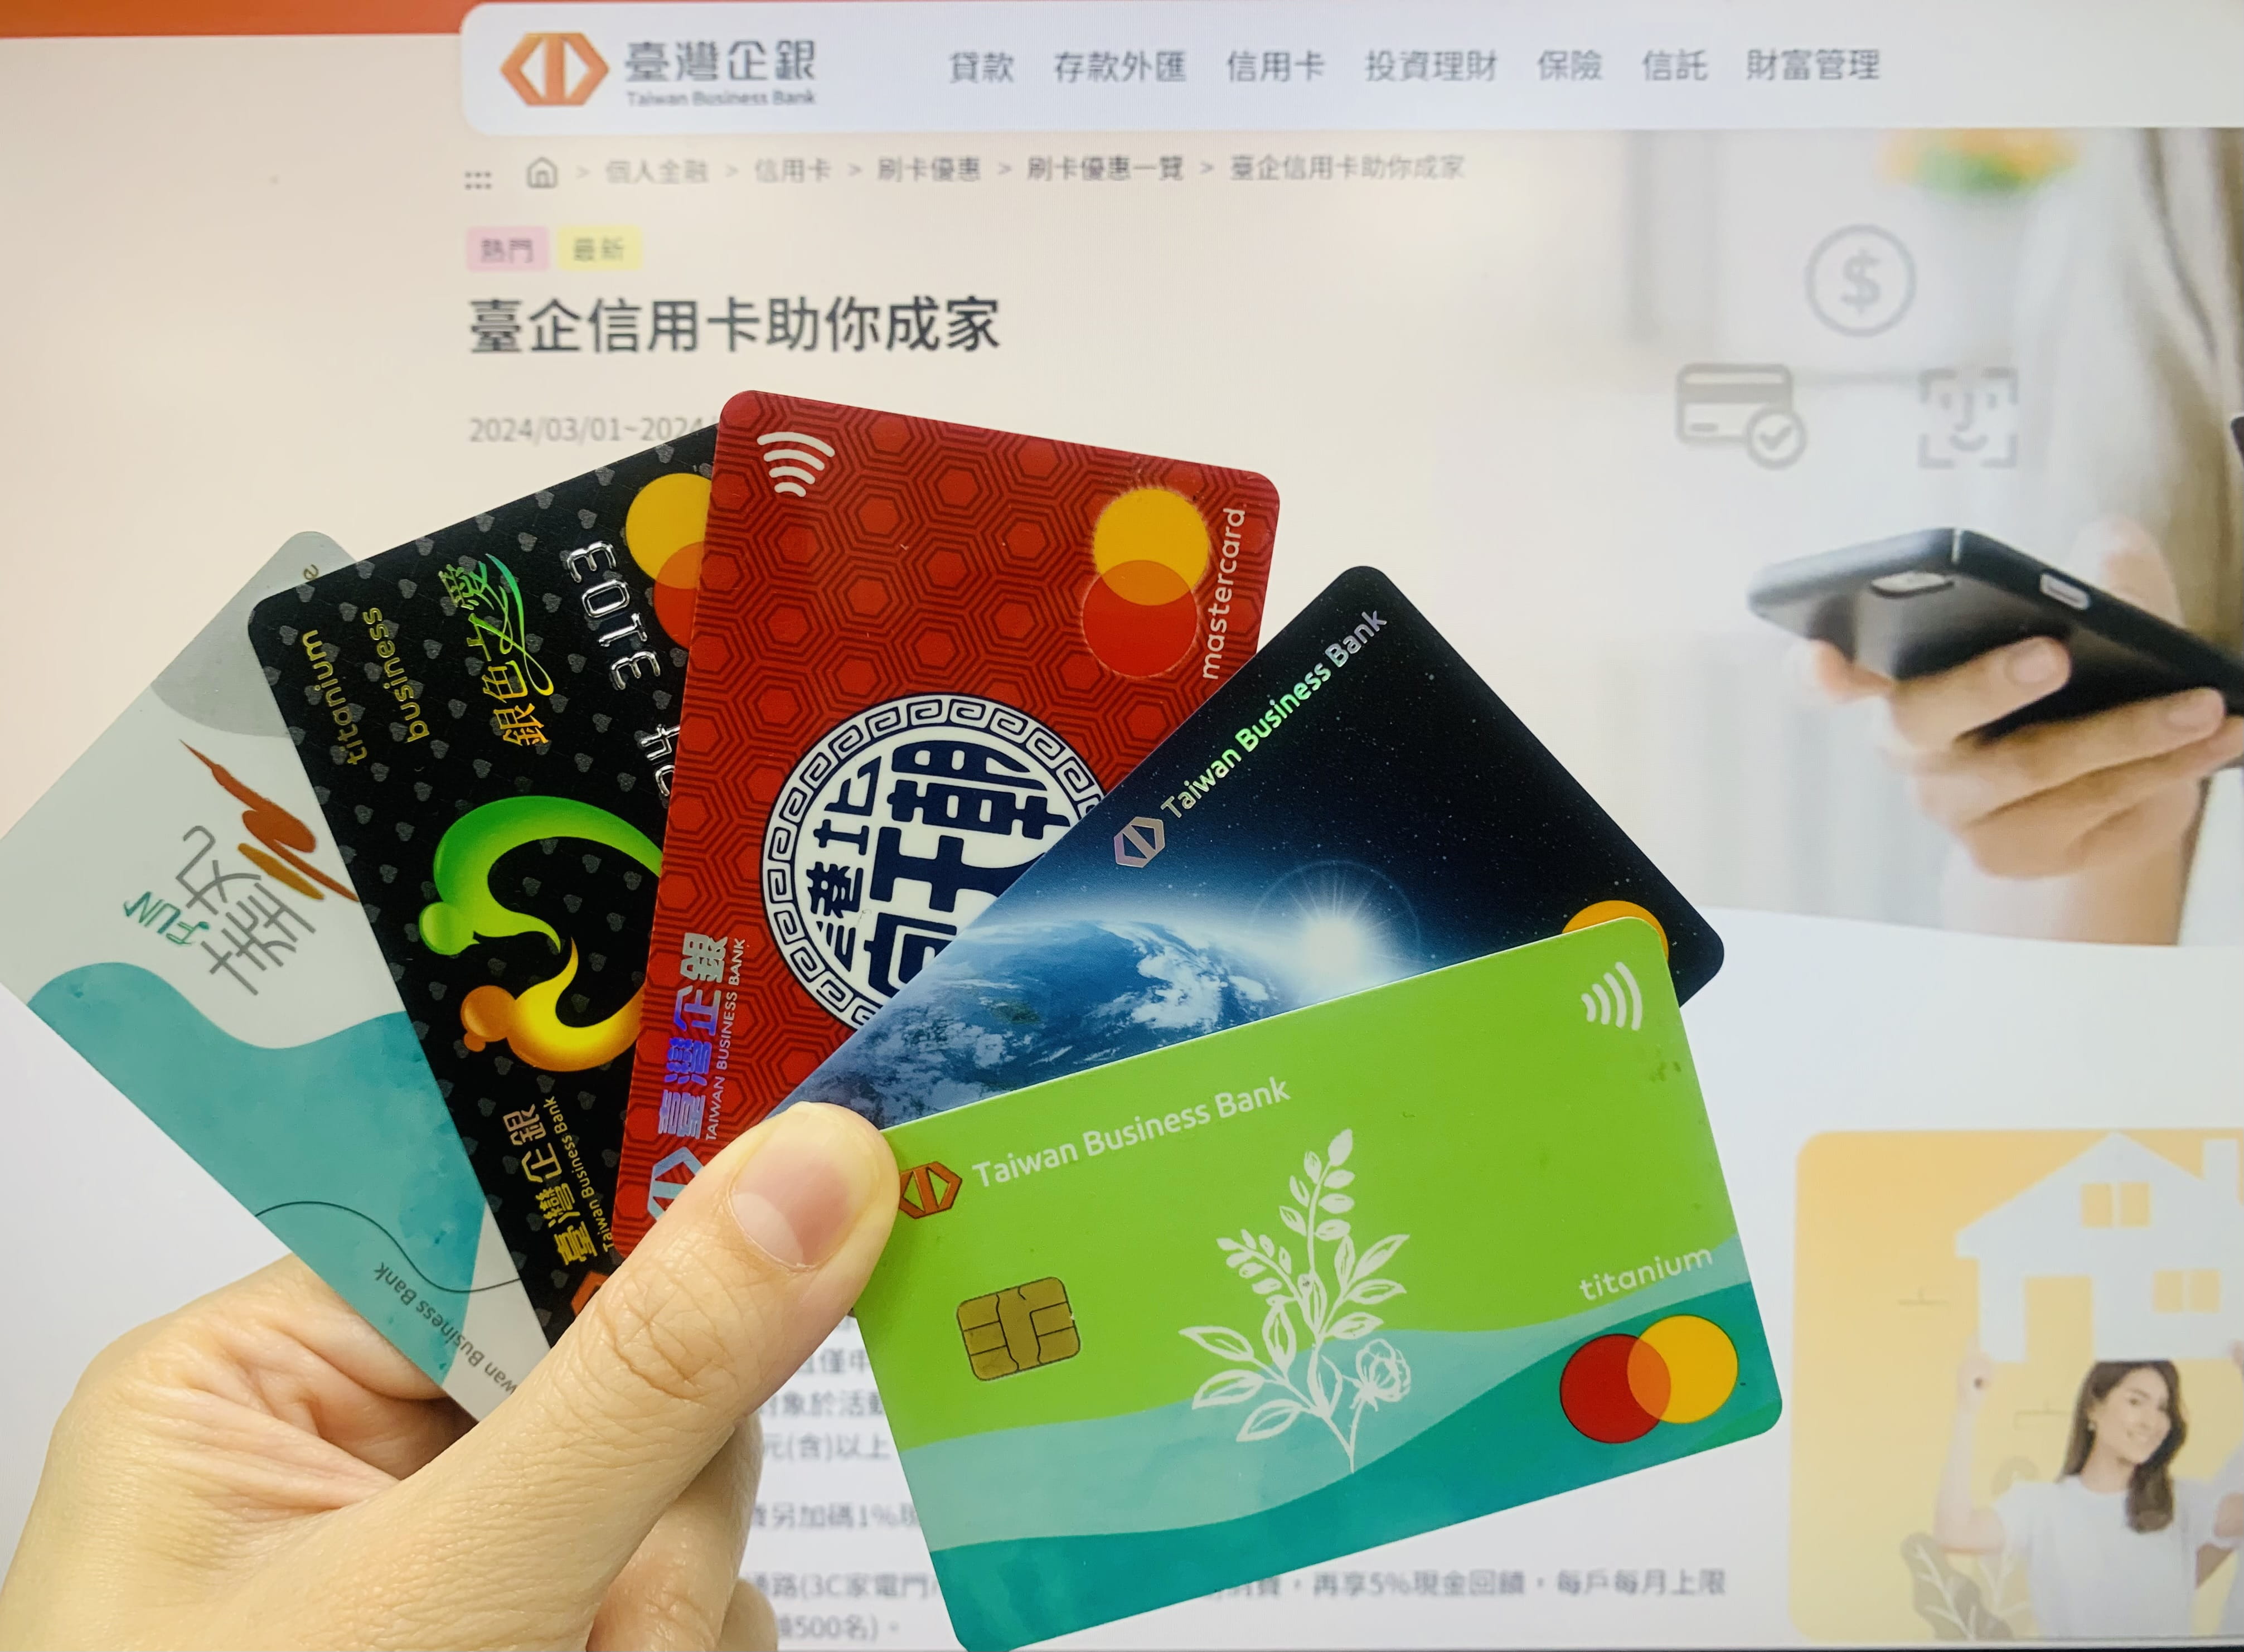 臺灣企銀信用卡助你成家 最高享5,000元回饋金